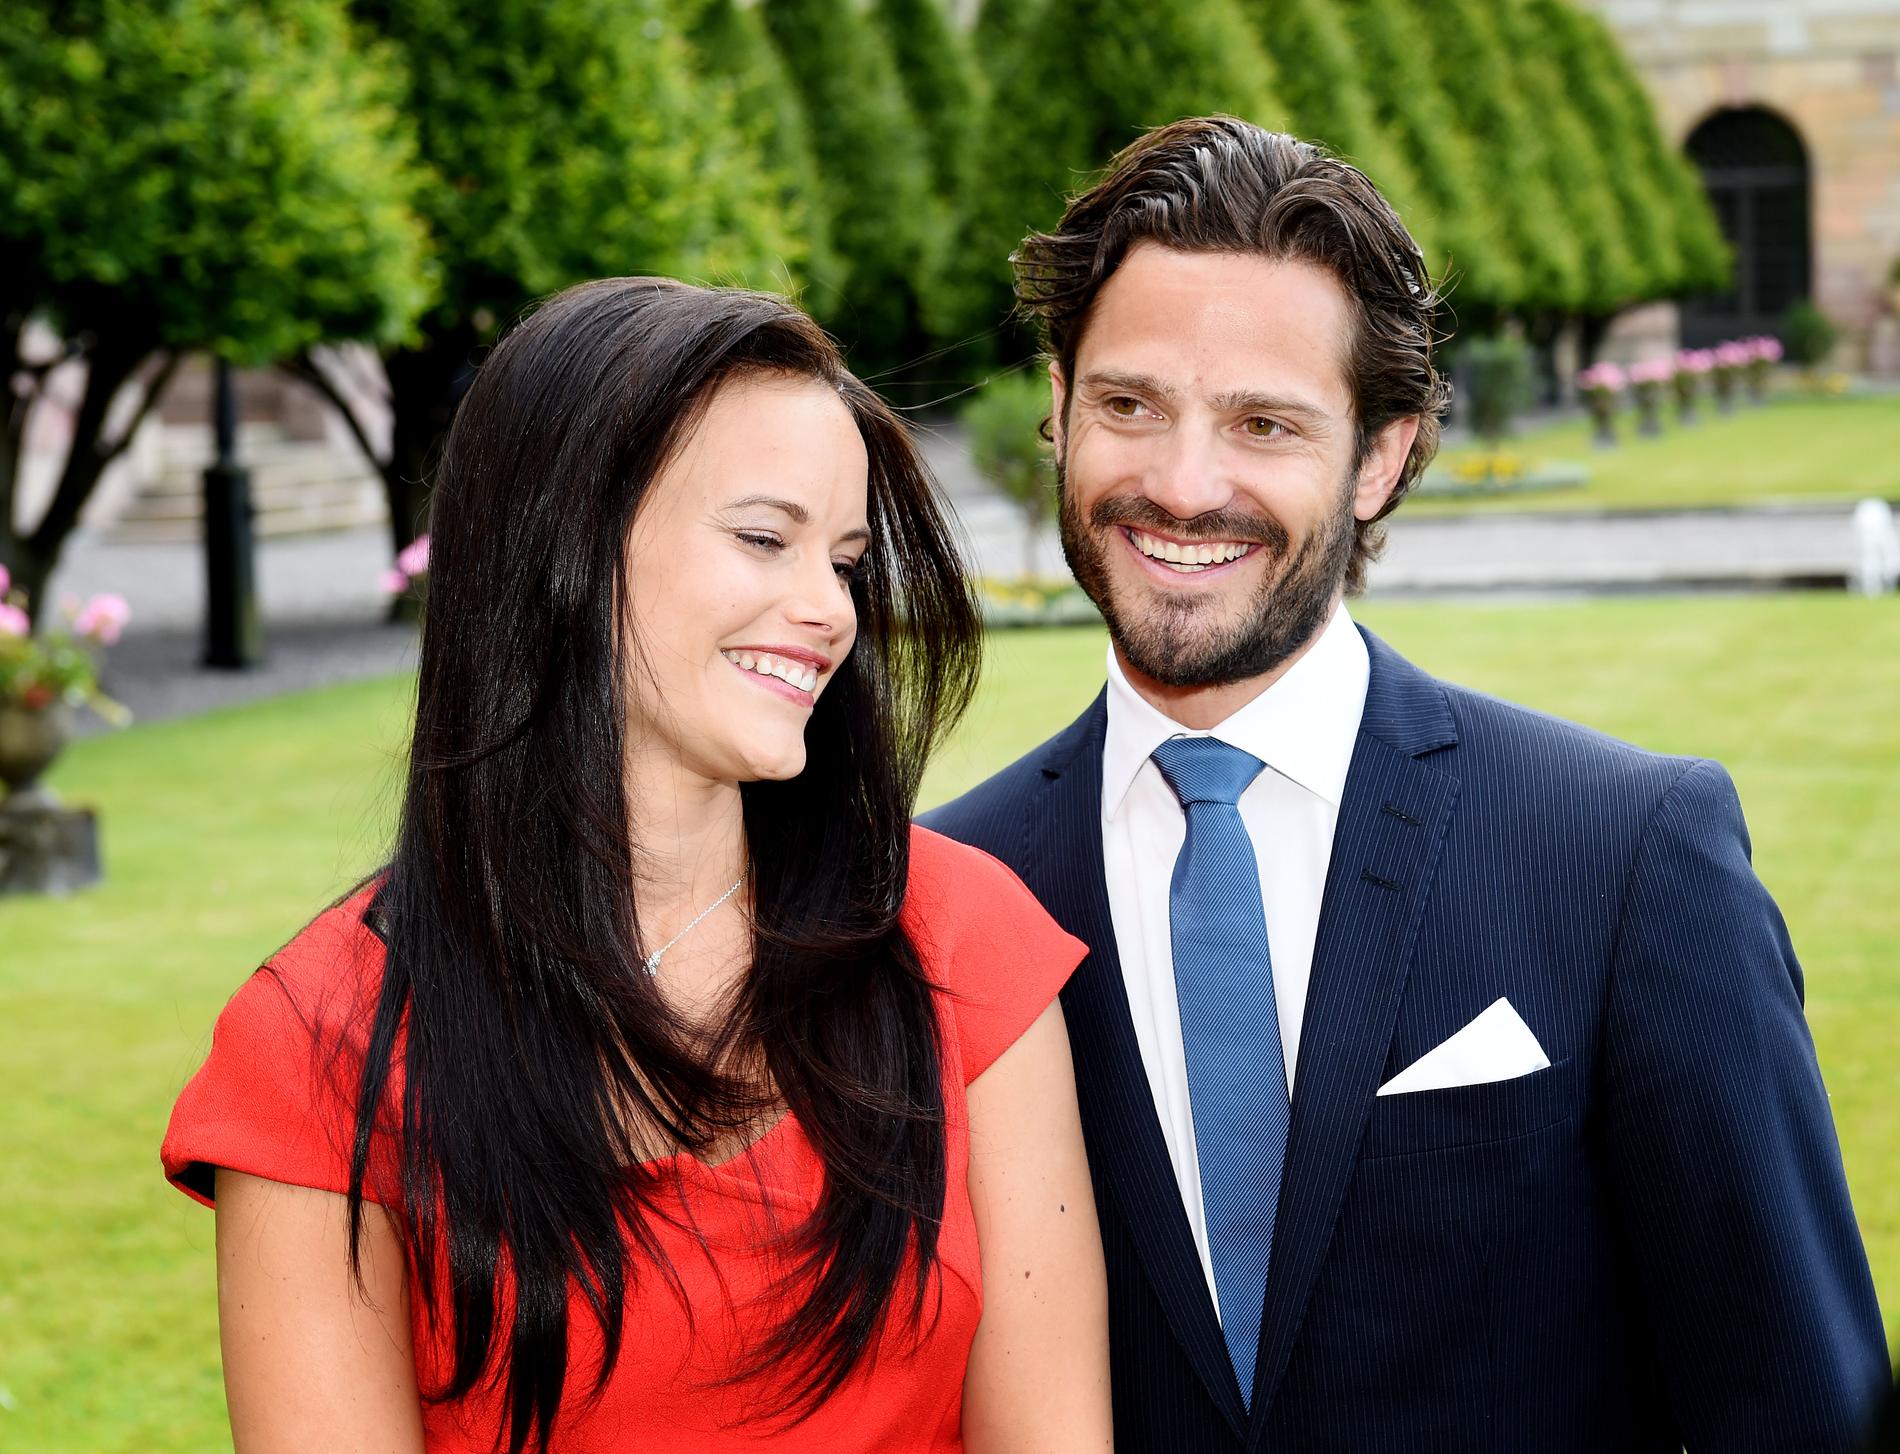 Efter över fyra år tillsammans berättade Sofia Hellqvist och Prins Carl Philip att de tänker gifta sig sommaren 2015. Sofia Hellqvist har haft en krokig väg in i kungafamiljen efter att ha deltagit i dokusåpan ”Paradise hotel” och vikit ut sig i herrtidningen Slitz.